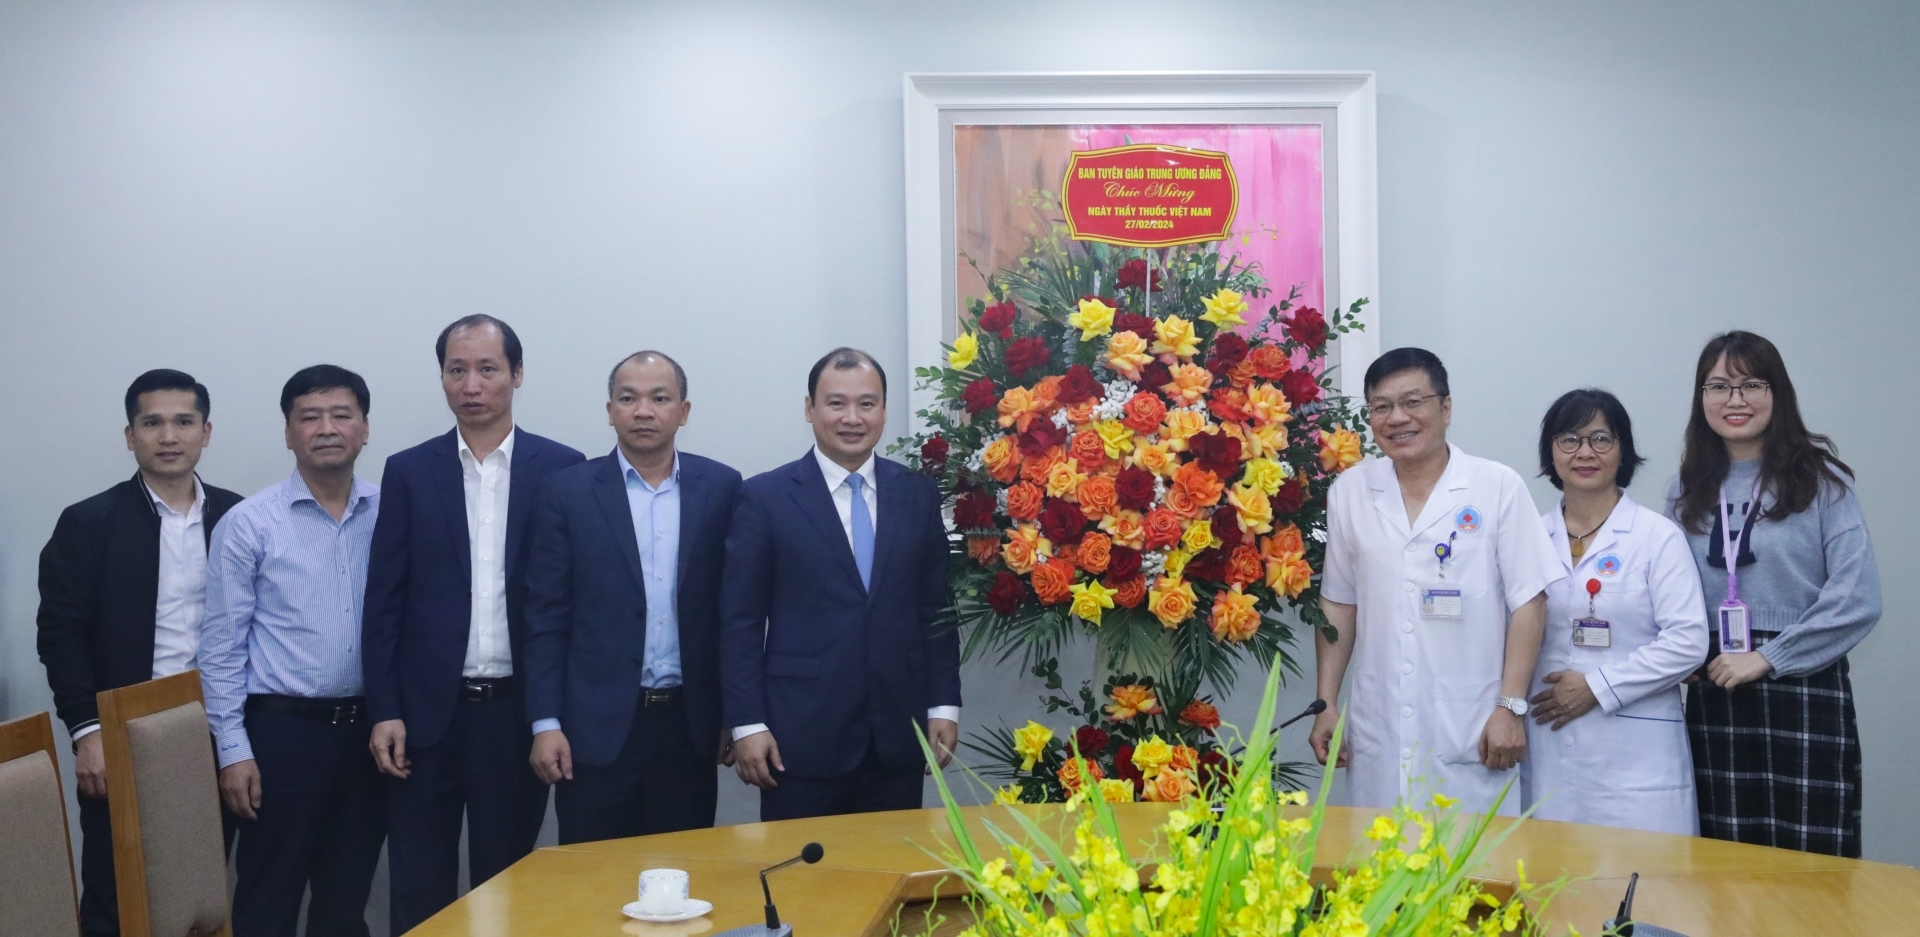 Đồng chí Lê Hải Bình tặng hoa chúc mừng Bệnh viện Hữu nghị Việt Xô.